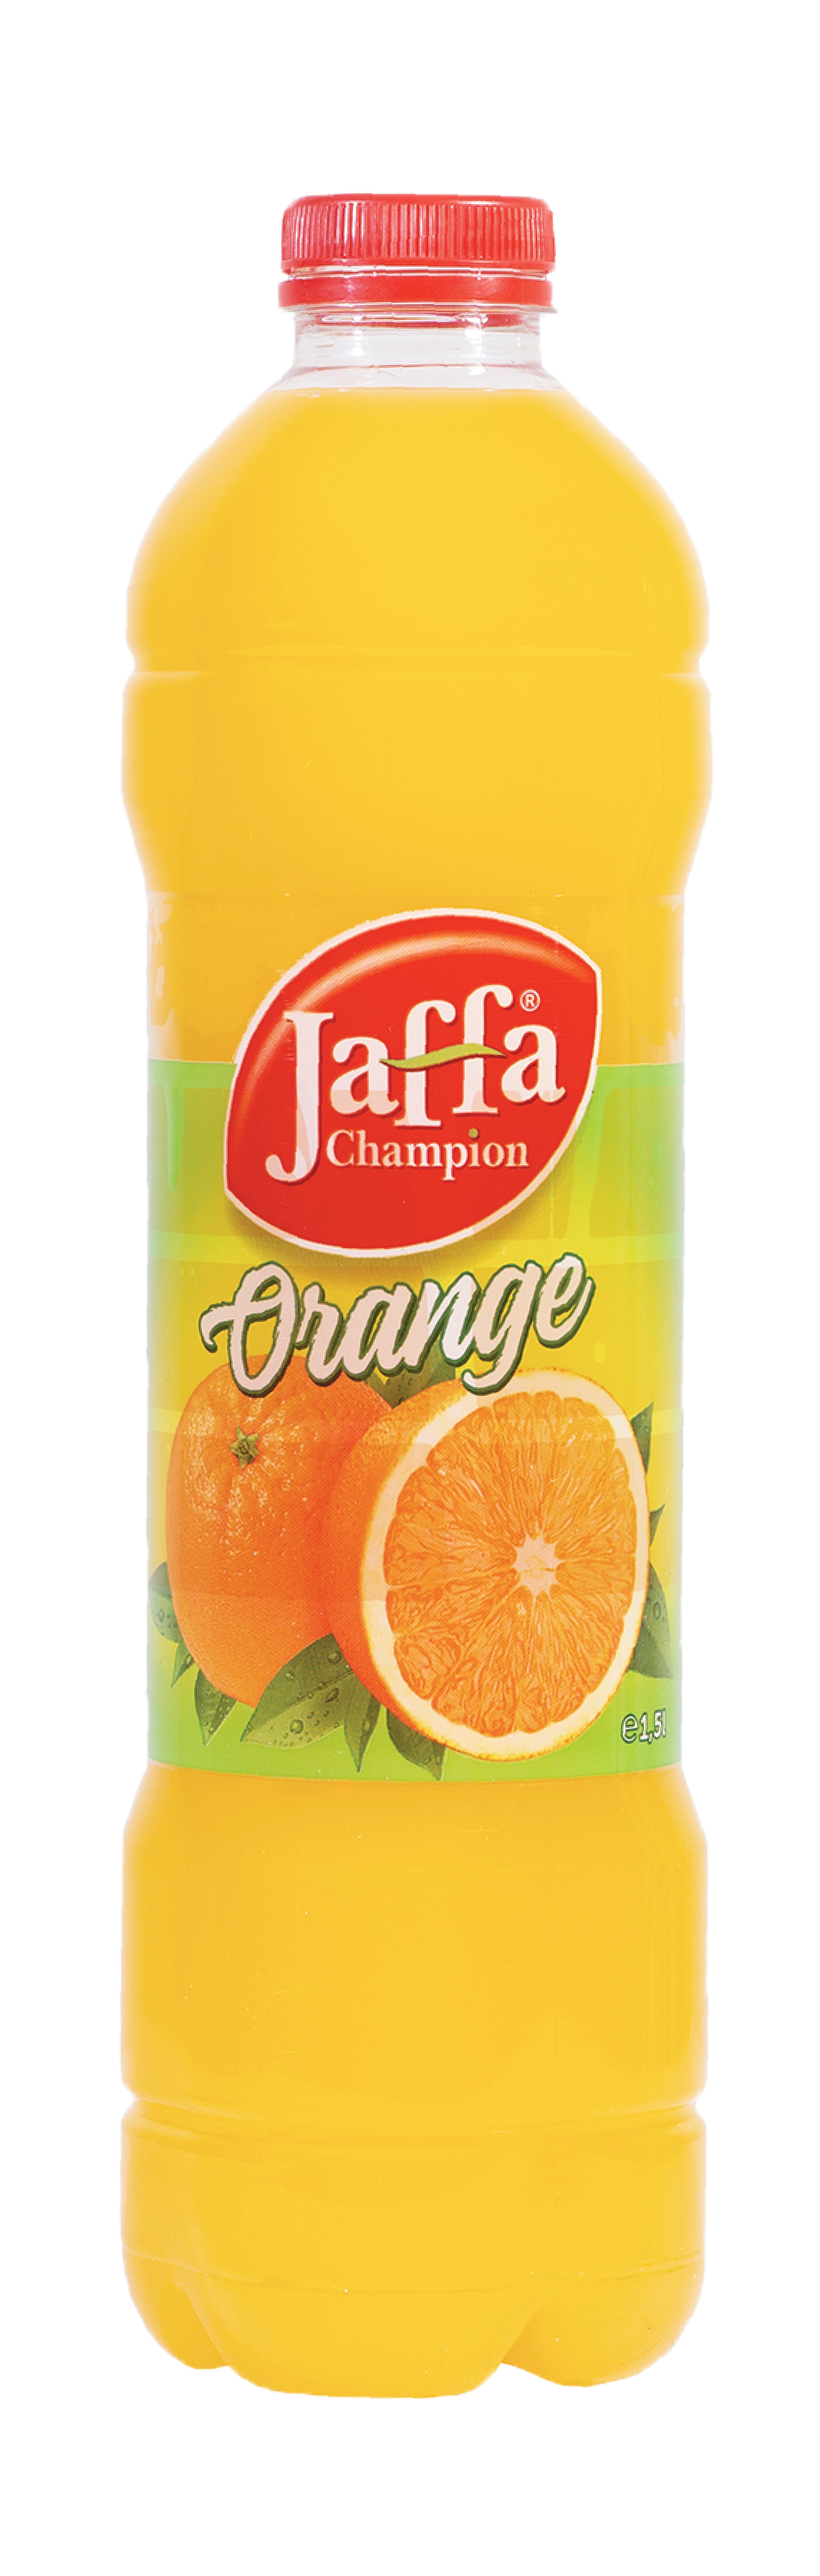 Jaffa Champion Orange 1,5 liter